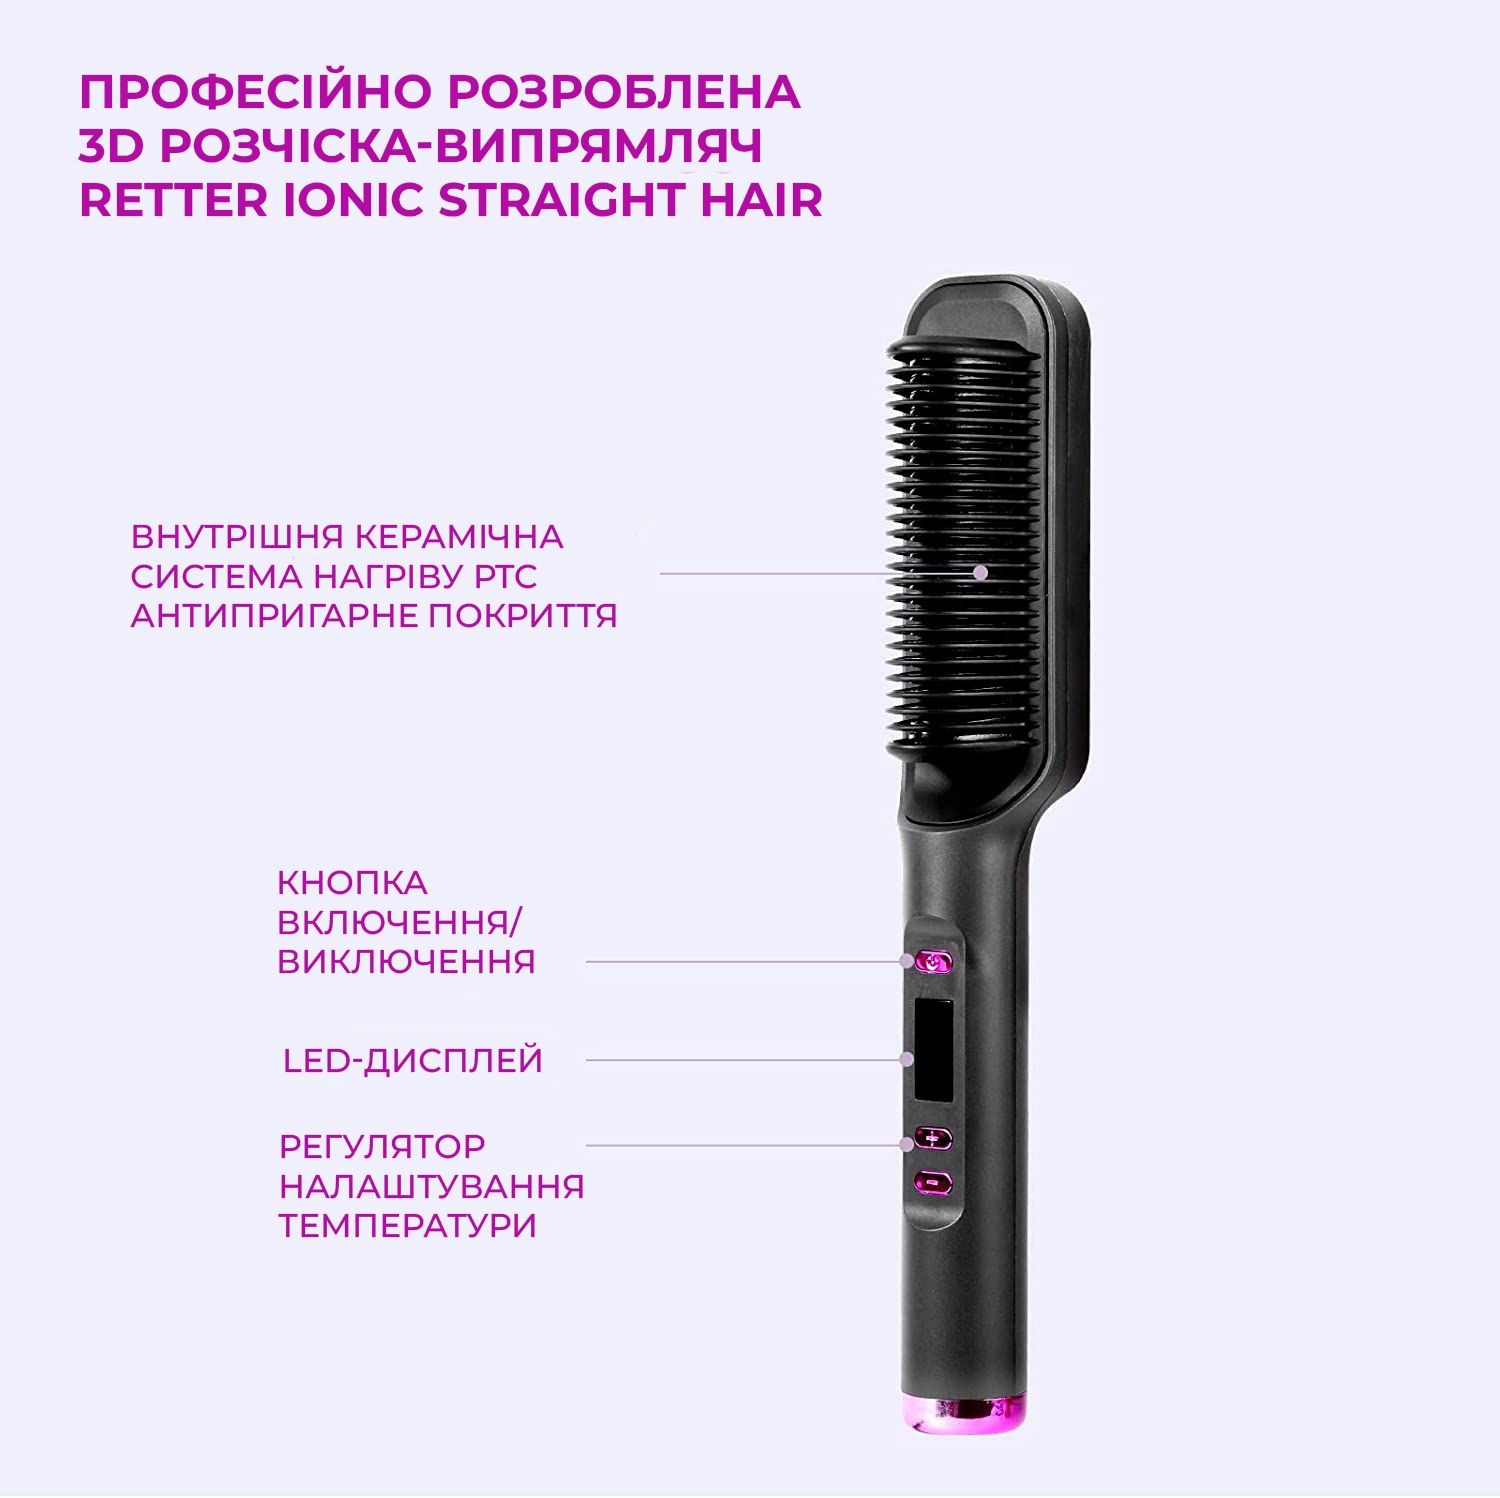 Ионная расчесĸа-выпрямитель RETTER Ionic Straight Hair (RT-5052)